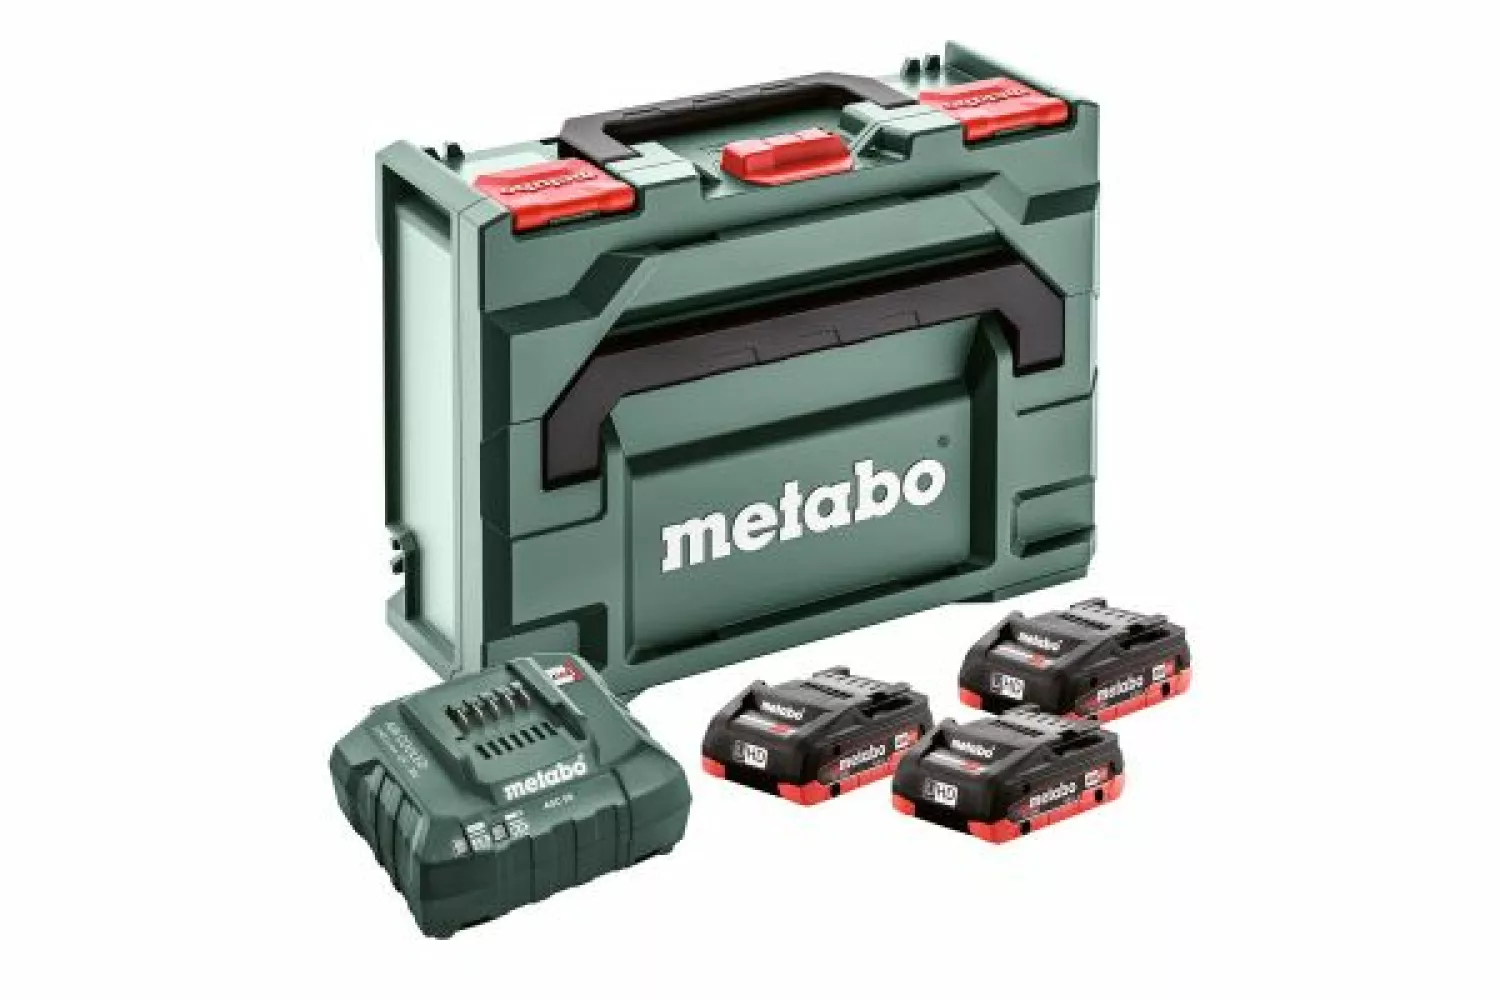 Metabo 685133000 18V LiHD accu starterset (3x LiHD 4.0Ah) + lader in metaBOX